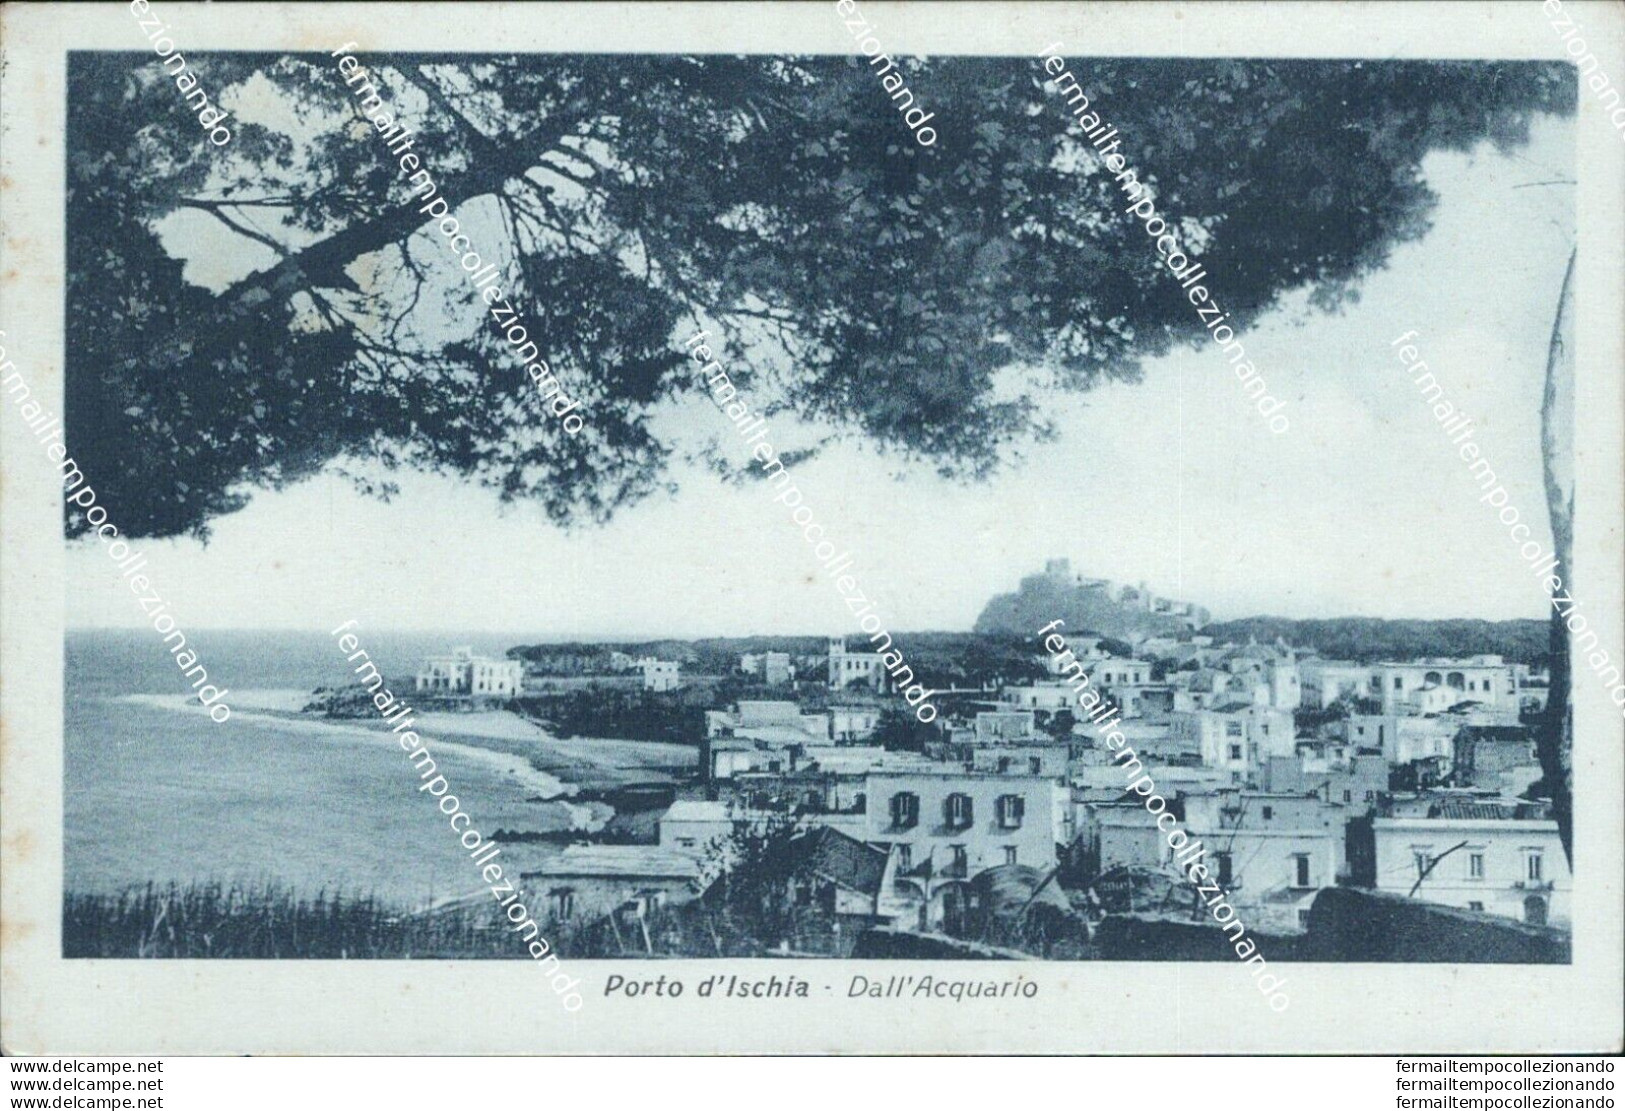 Bh192 Cartolina Porto D'ischia Dall'acquario Provincia Di Napoli - Napoli